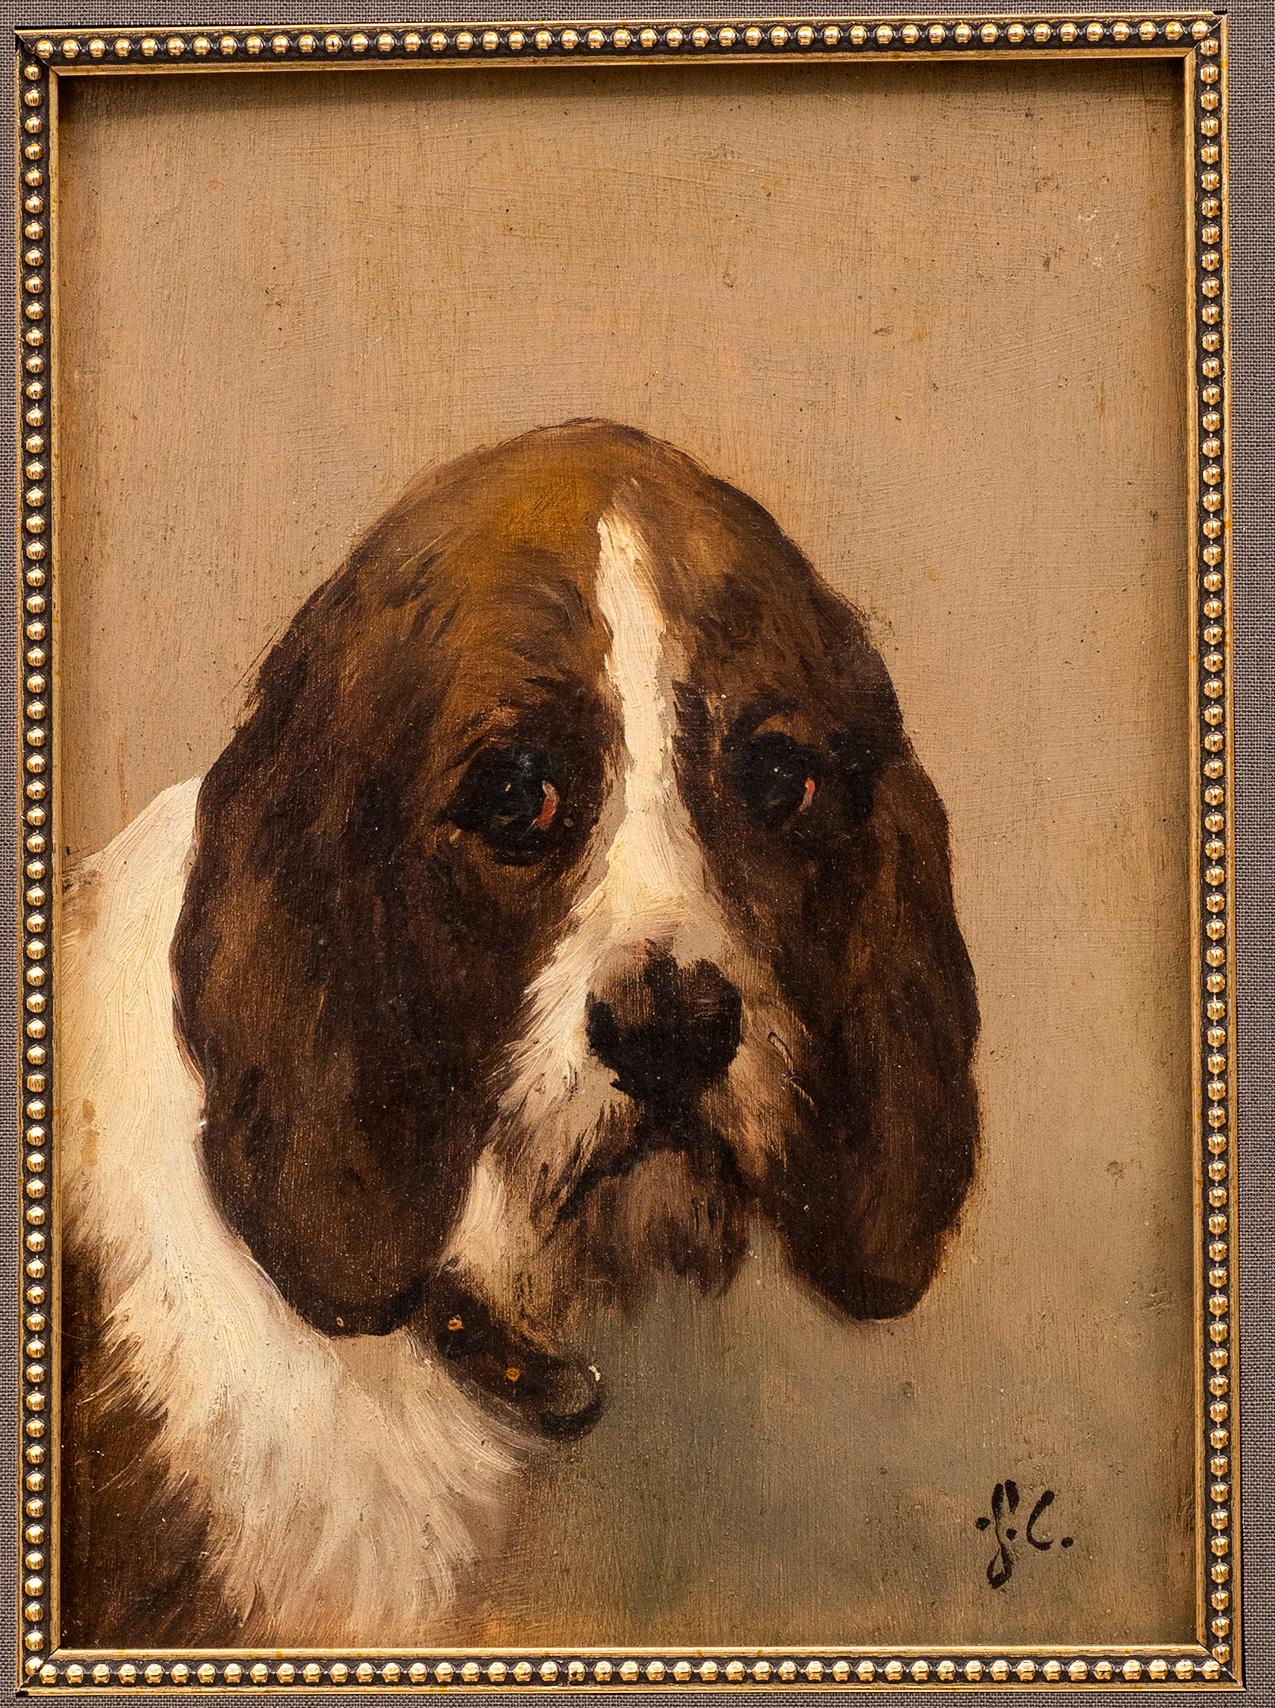 Antikes Gemälde eines Jagdhundes
Jules Chardigny (1849-1892)
CIRCA 1870
Öl auf Papier.
8 x 6 (18 1/2 x 15 1/4 Rahmen) Zoll

Der Hund, möglicherweise ein Grand Griffon Vendéen, ist mit einem eher fröhlichen Gesichtsausdruck abgebildet. Ähnlich